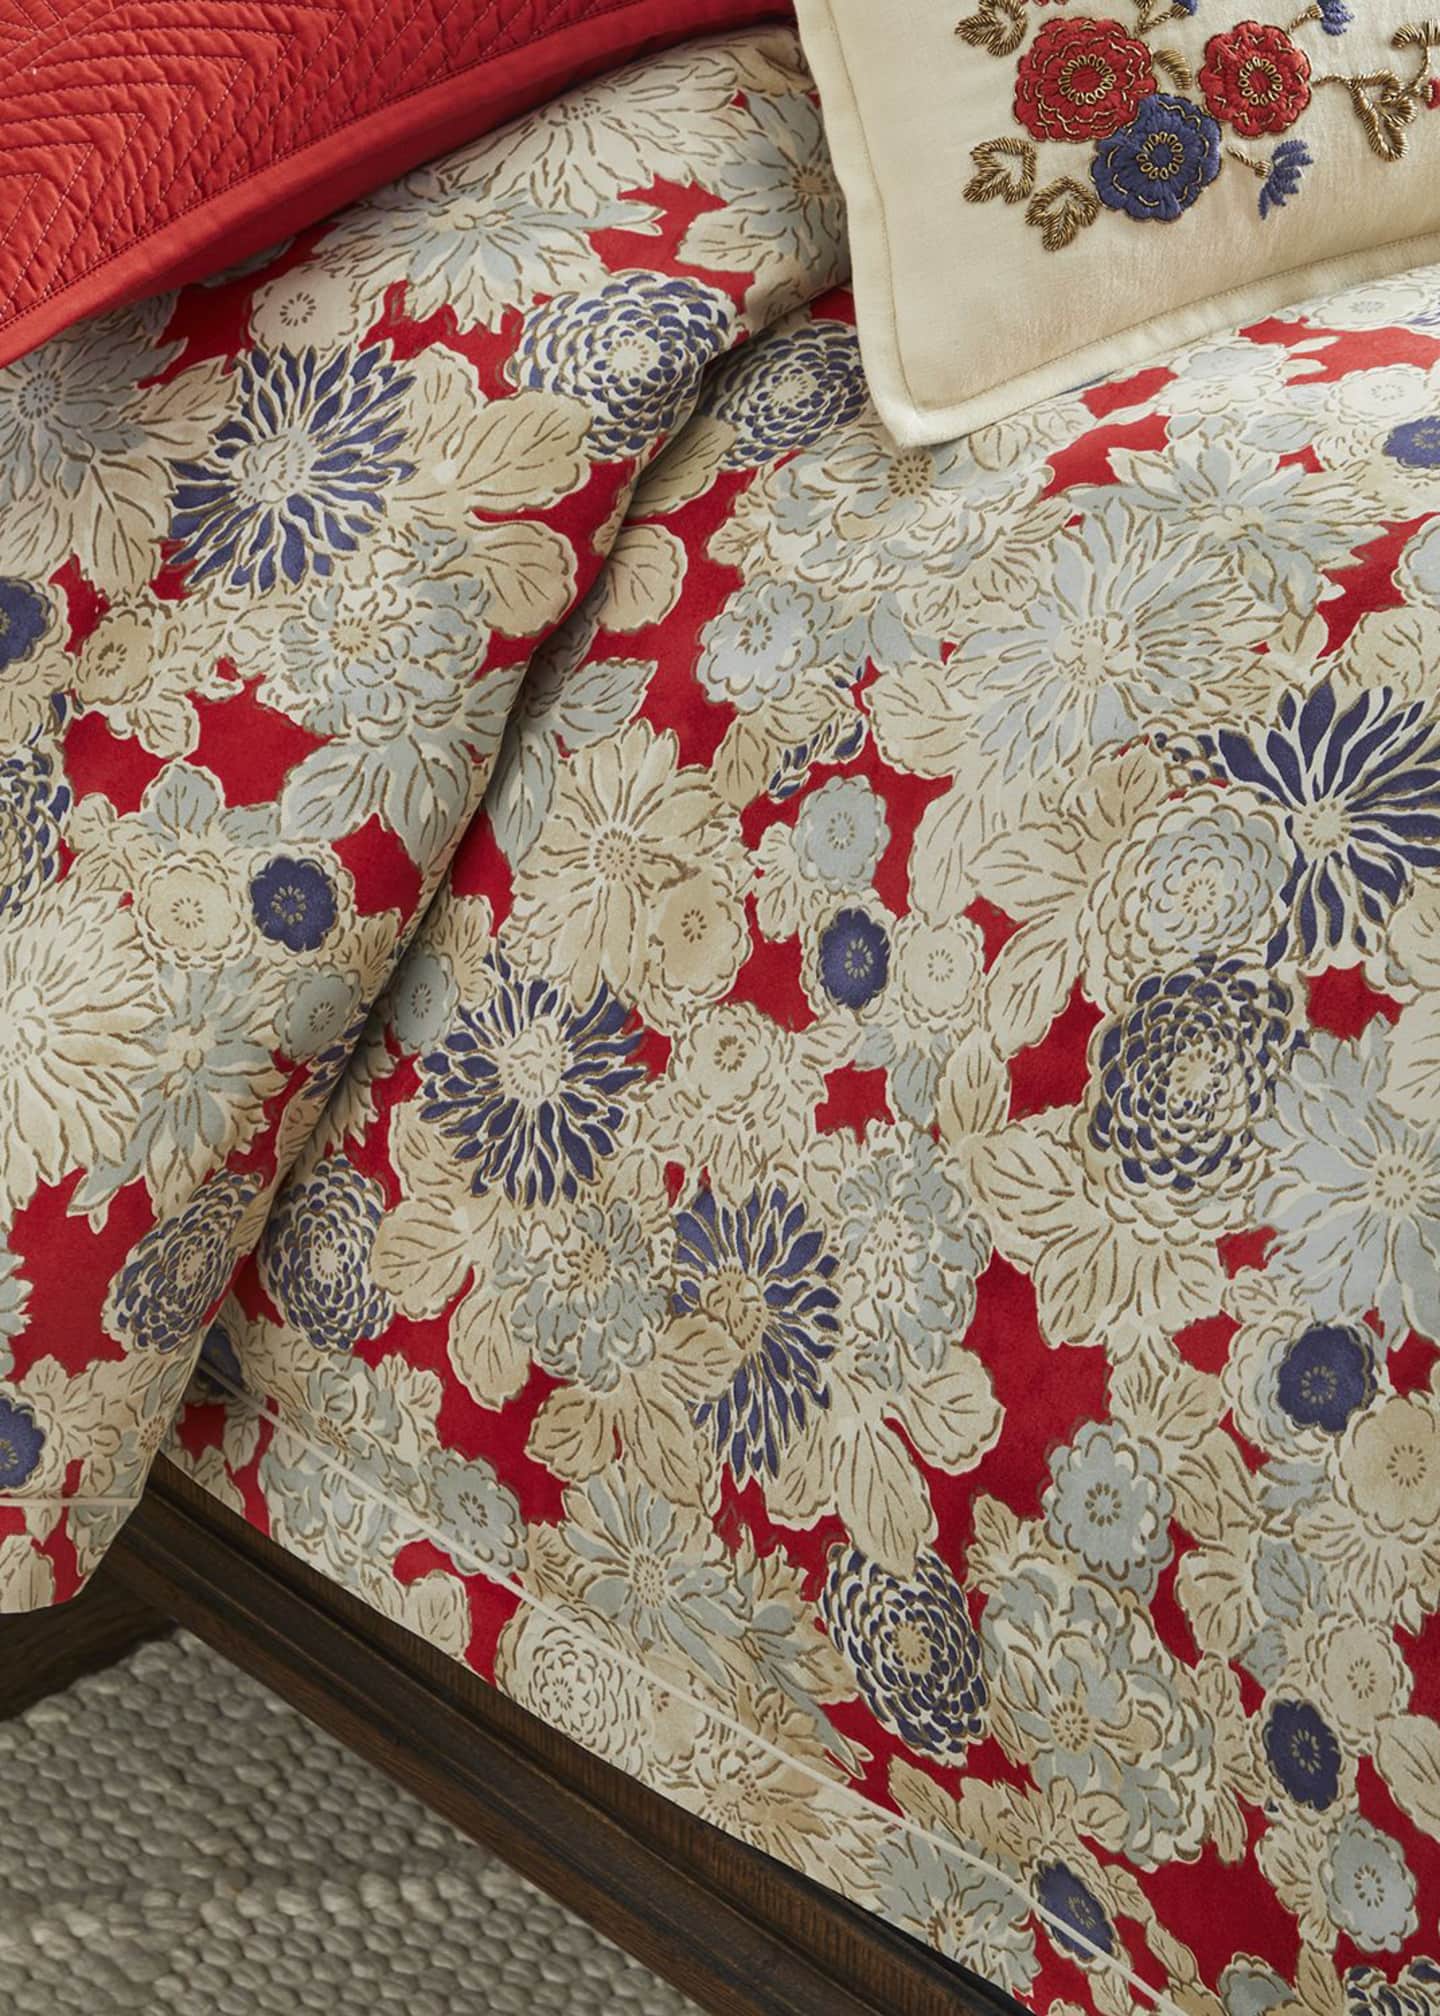 Ralph Lauren Home Remy Floral Full Queen Comforter - Bergdorf Goodman